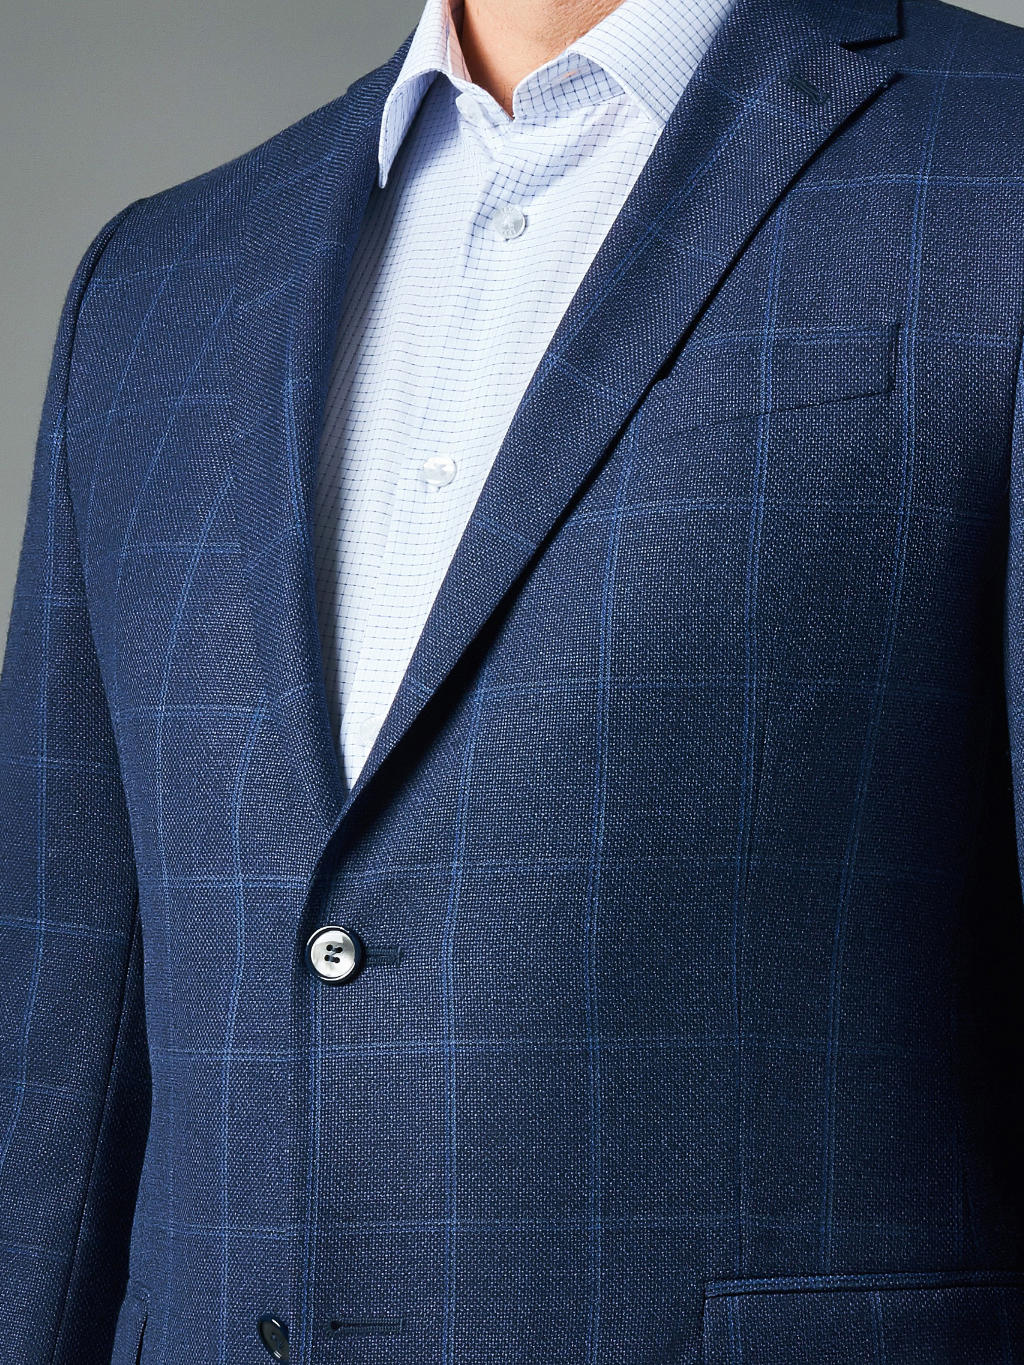 Пиджак из итальянской шерстяной ткани Reda в тонкую клетку Regular Fit